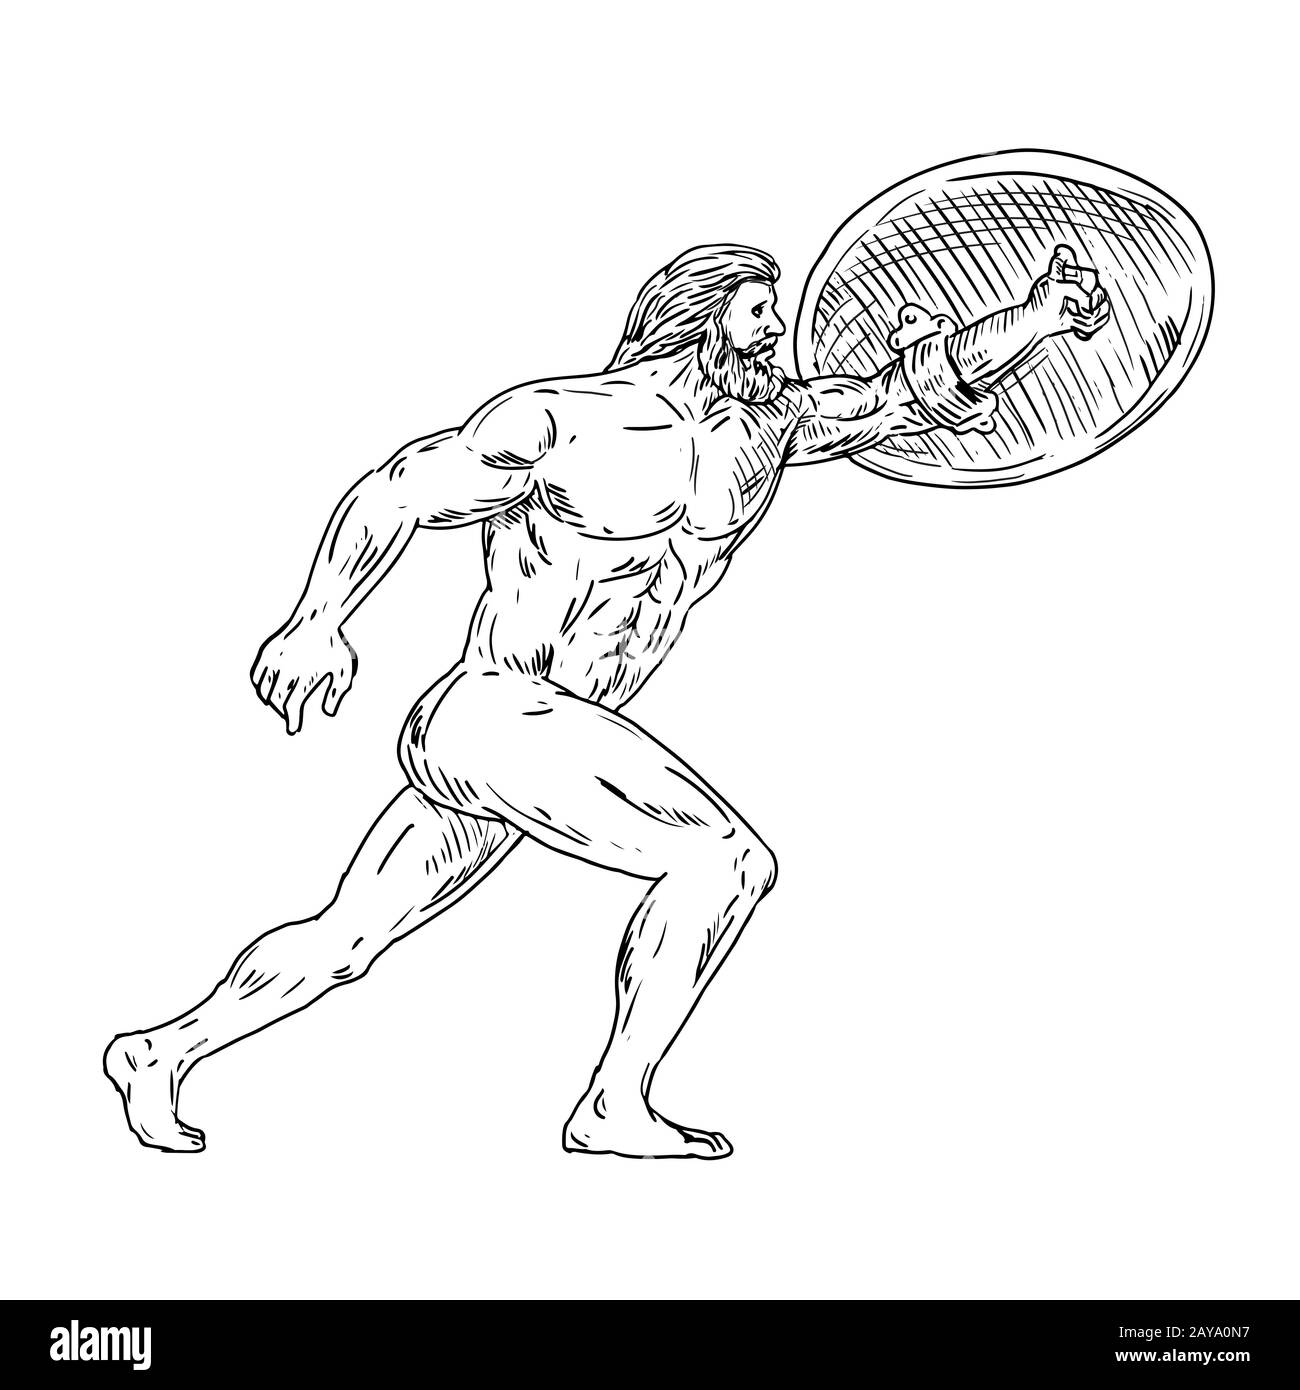 Heracles con Escudo urgiendo hacia adelante dibujo en blanco y negro Foto de stock